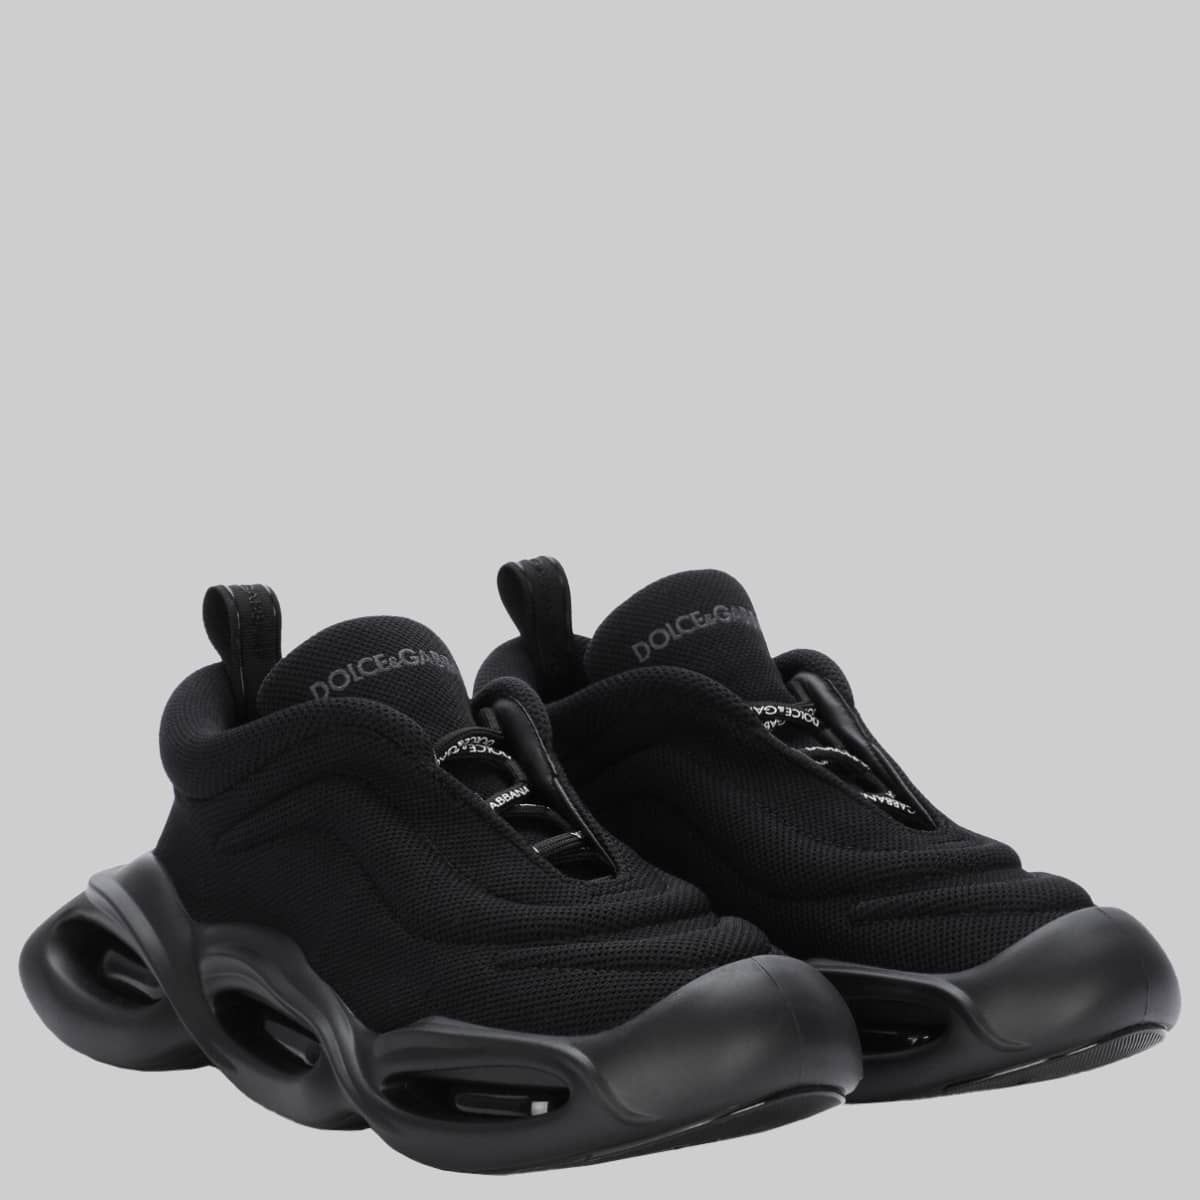 Air Sole Sneakers in Black